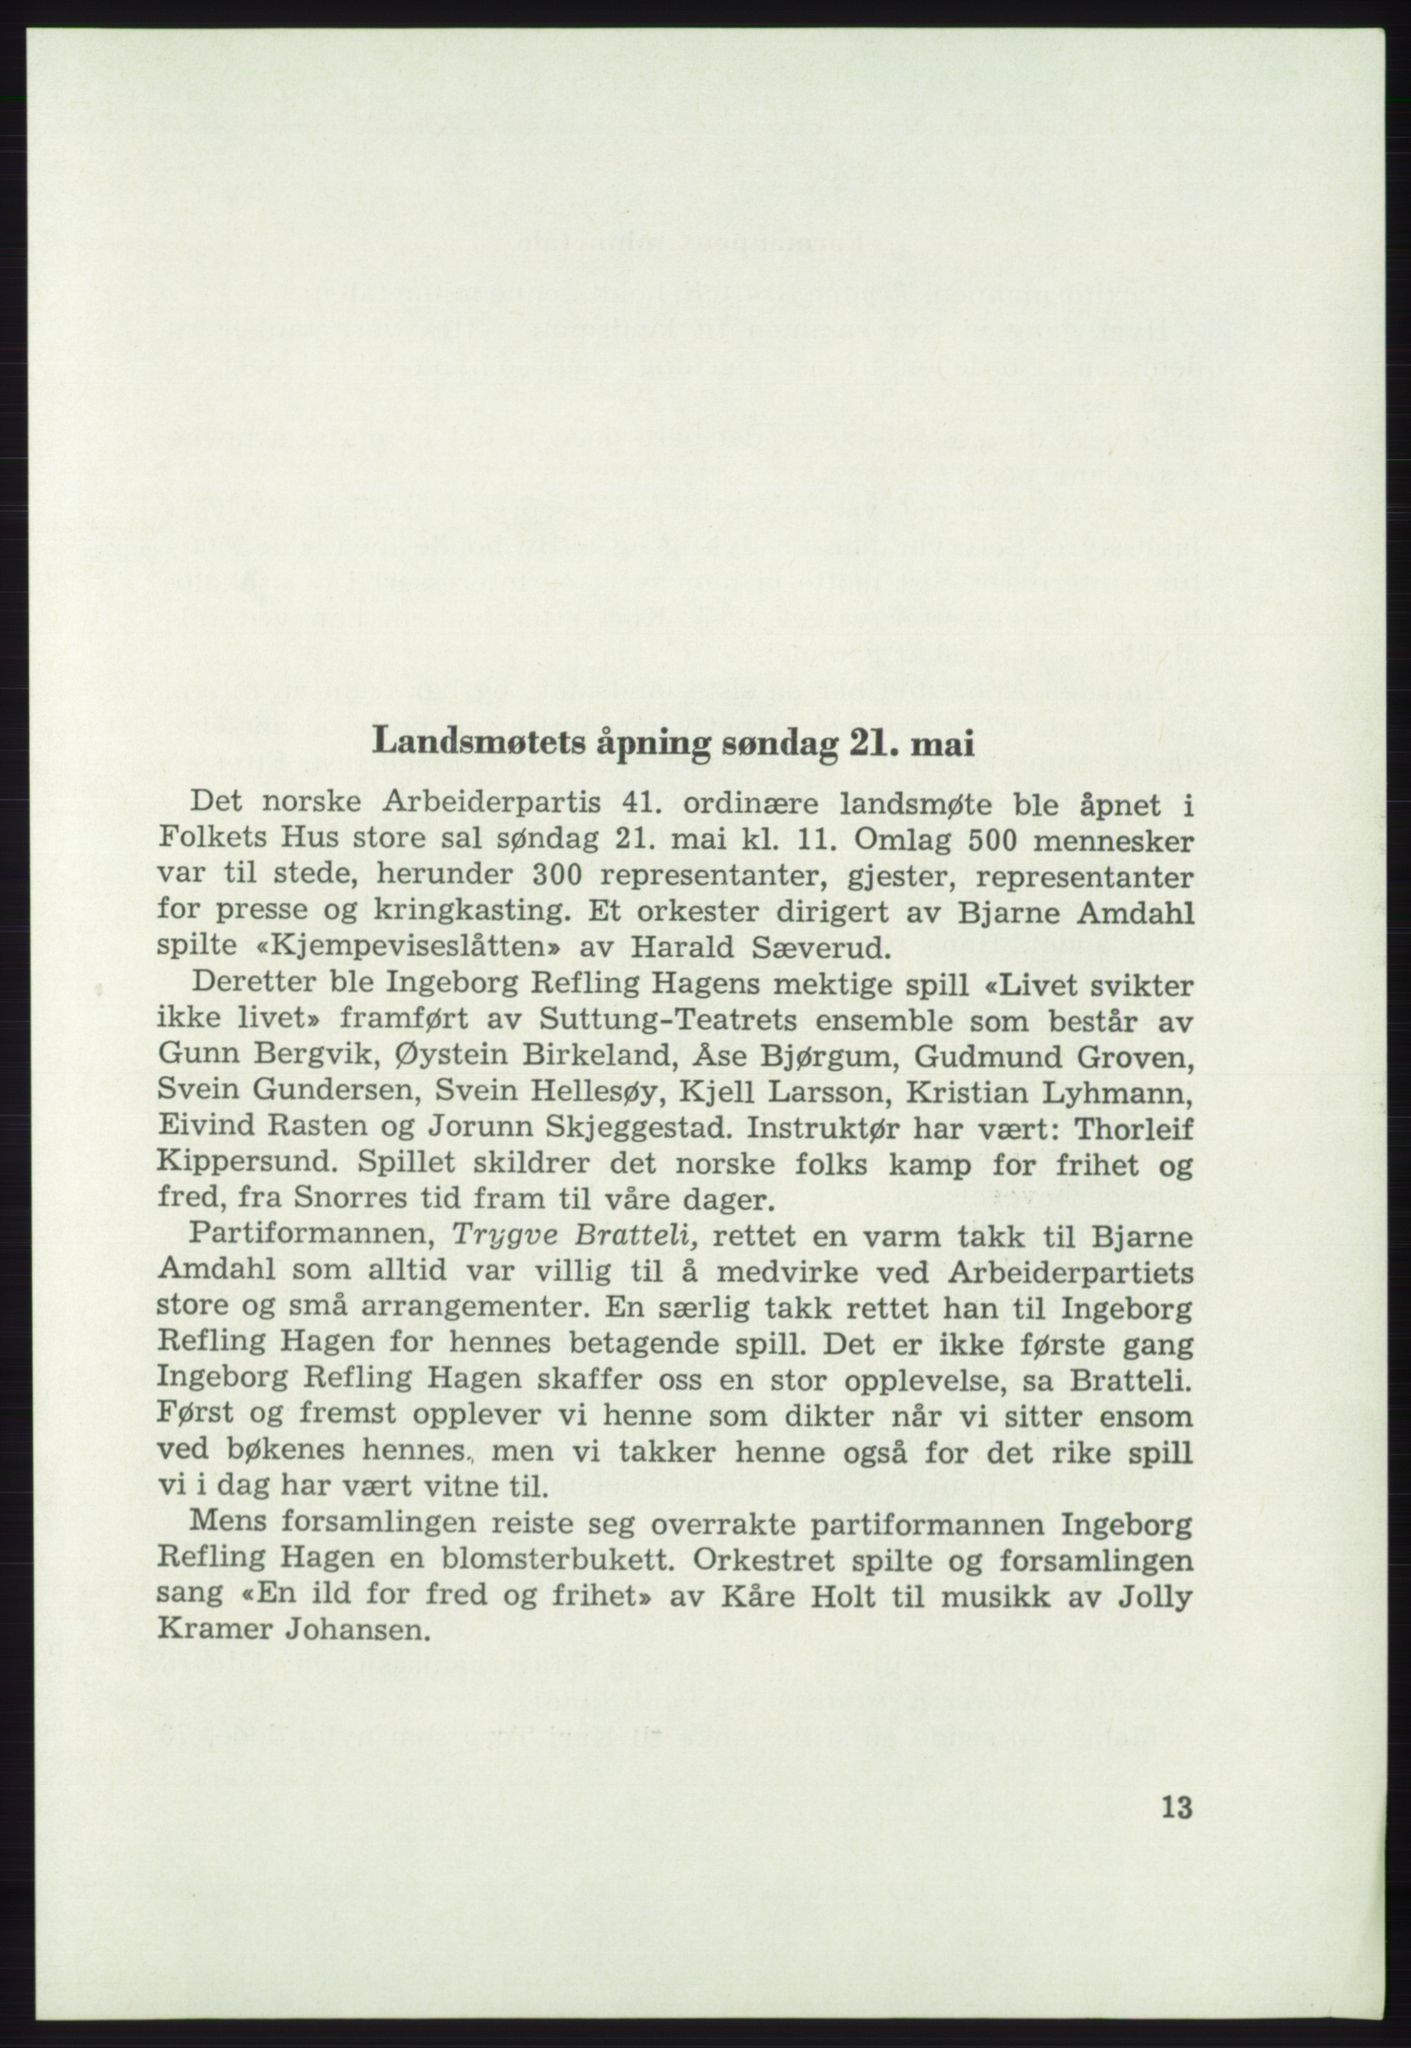 Det norske Arbeiderparti - publikasjoner, AAB/-/-/-: Protokoll over forhandlingene på det 41. ordinære landsmøte 21.-23. mai 1967 i Oslo, 1967, p. 13